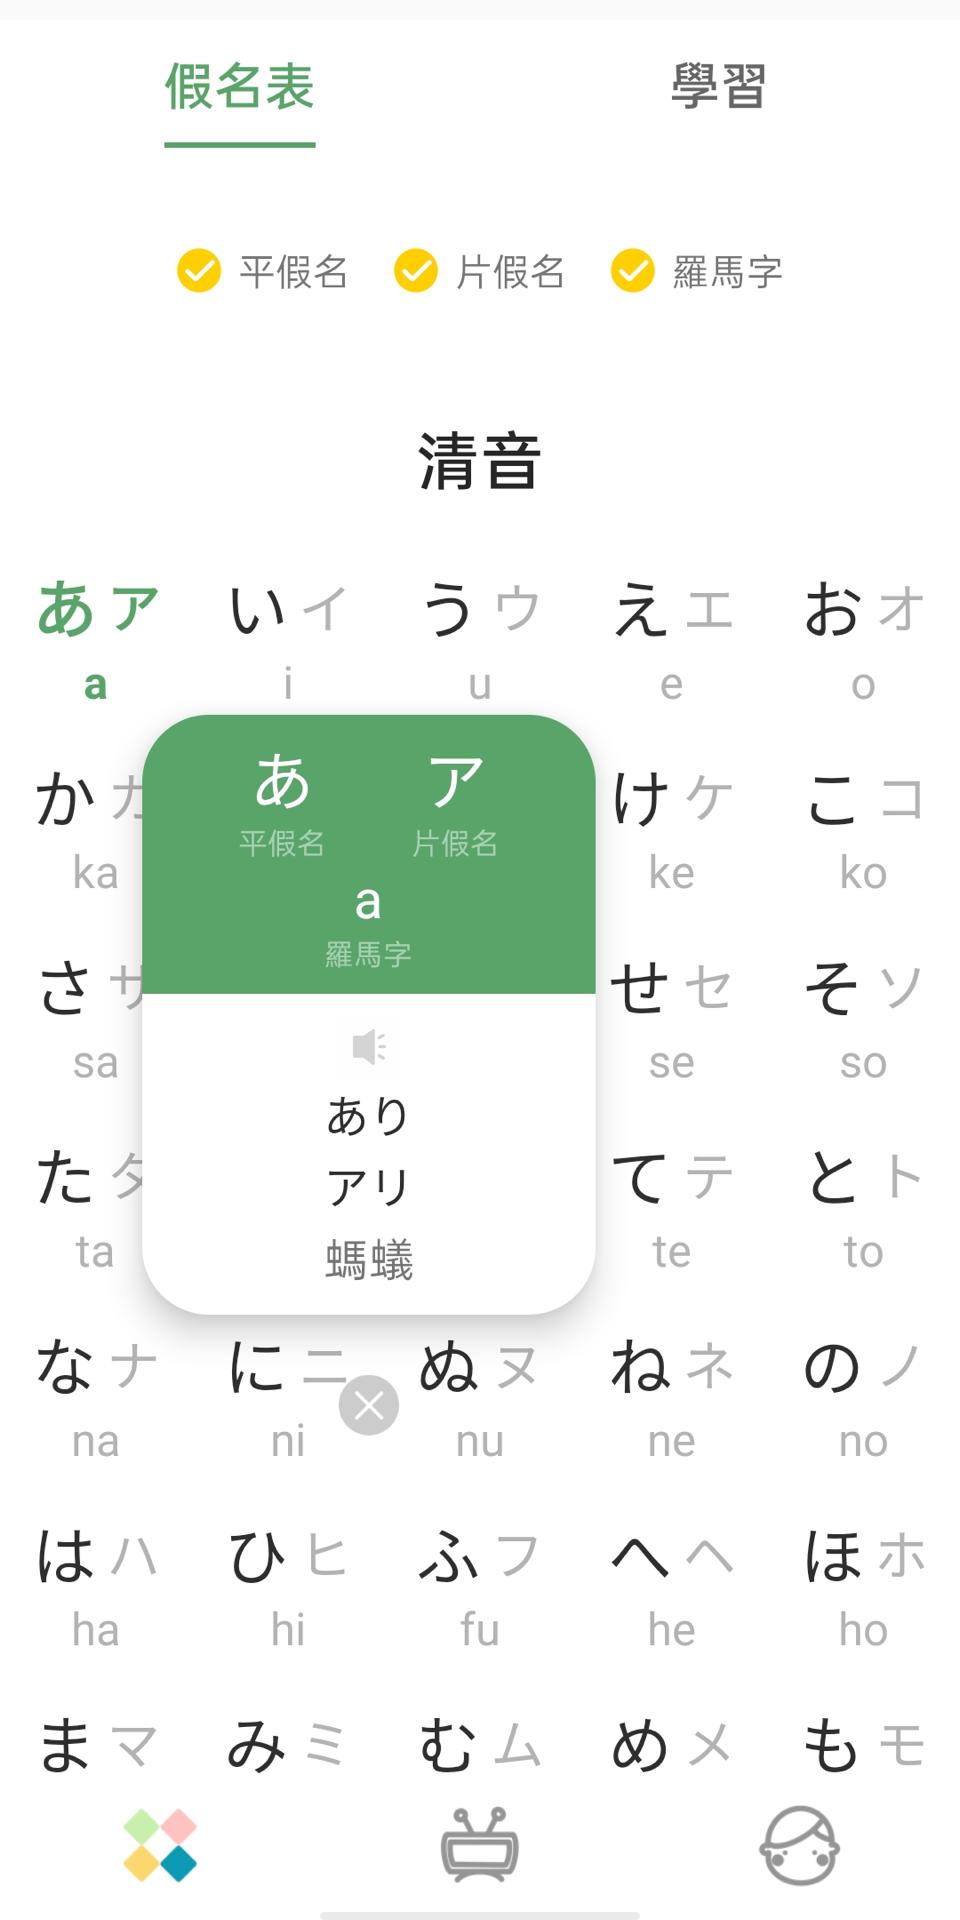 下載日文五十音發音表 日文平假名 片假名 羅馬音學習的安卓版本